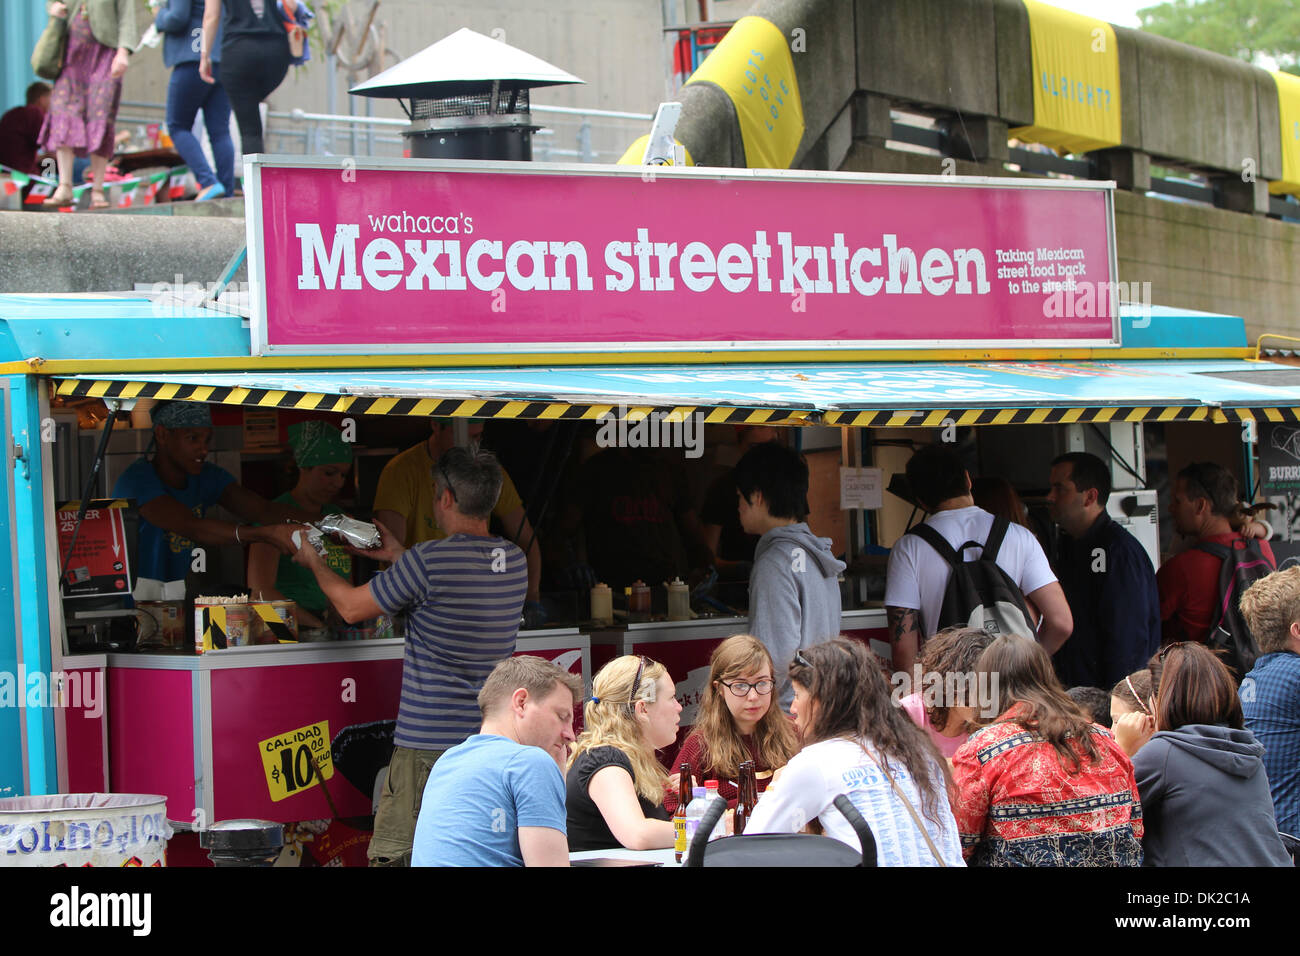 Mexixan street kitchen Stock Photo